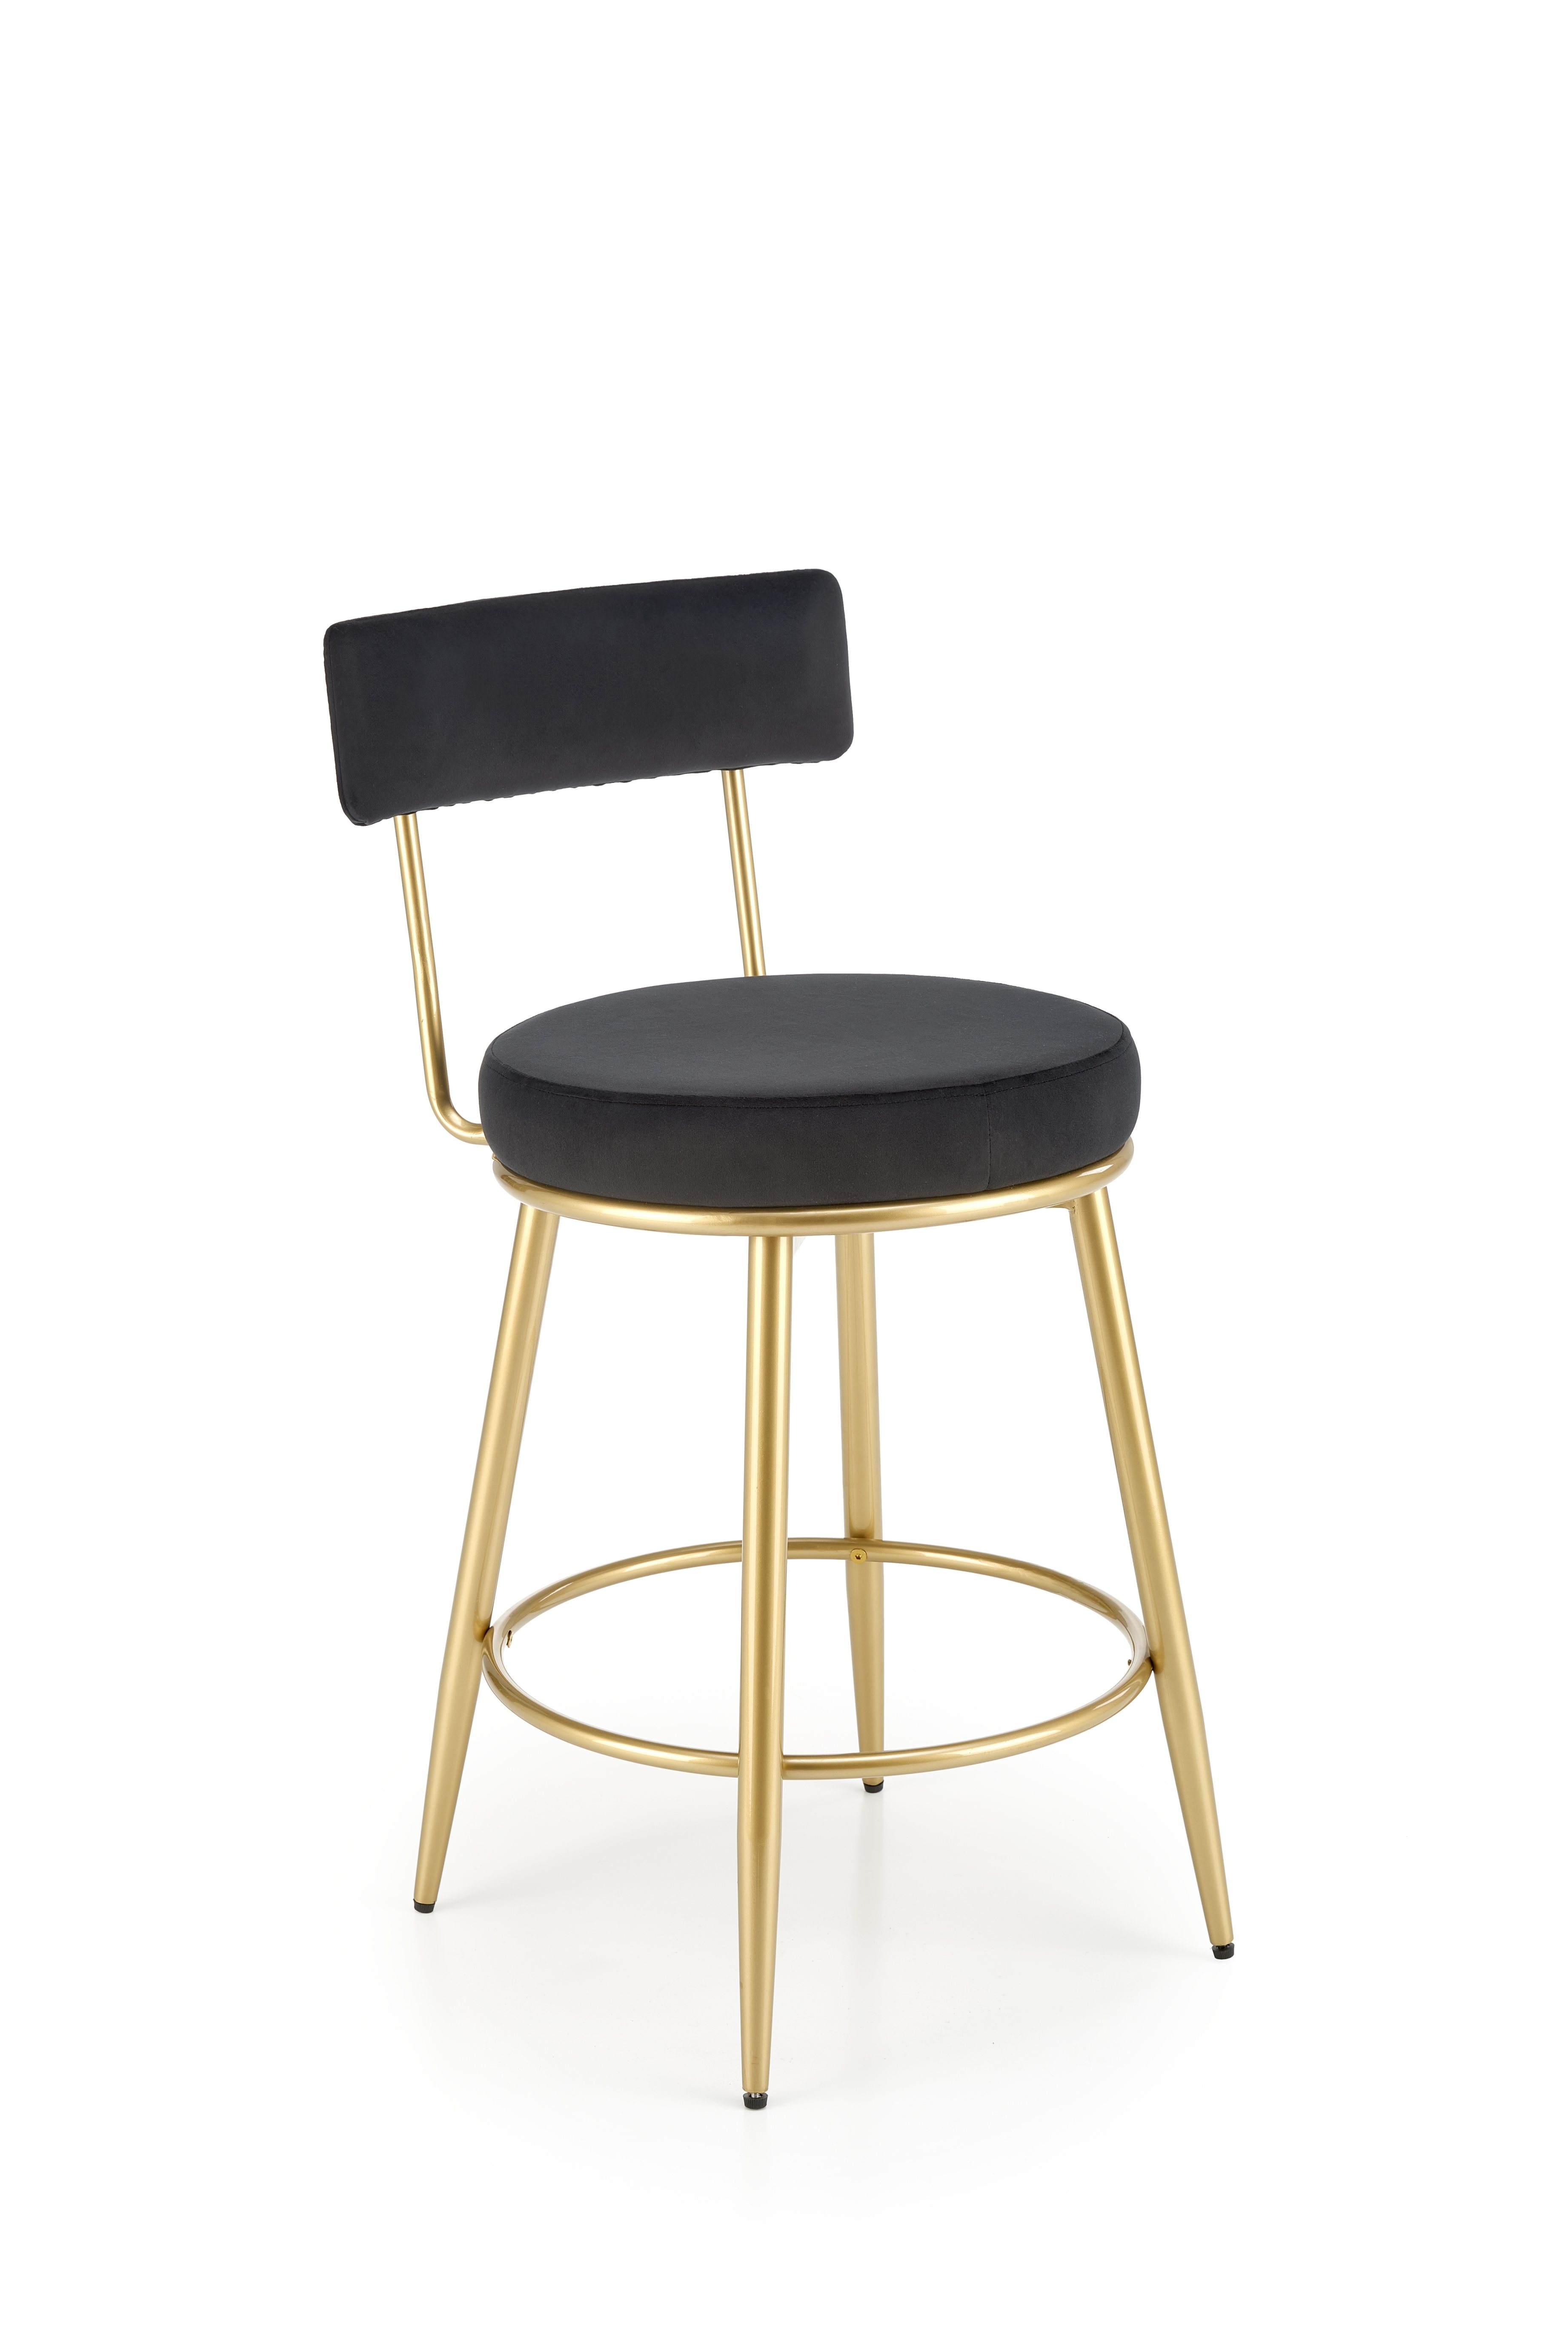 H115 Barová stolička Čierny / zlaté h115 Barová stolička Čierny / zlaté